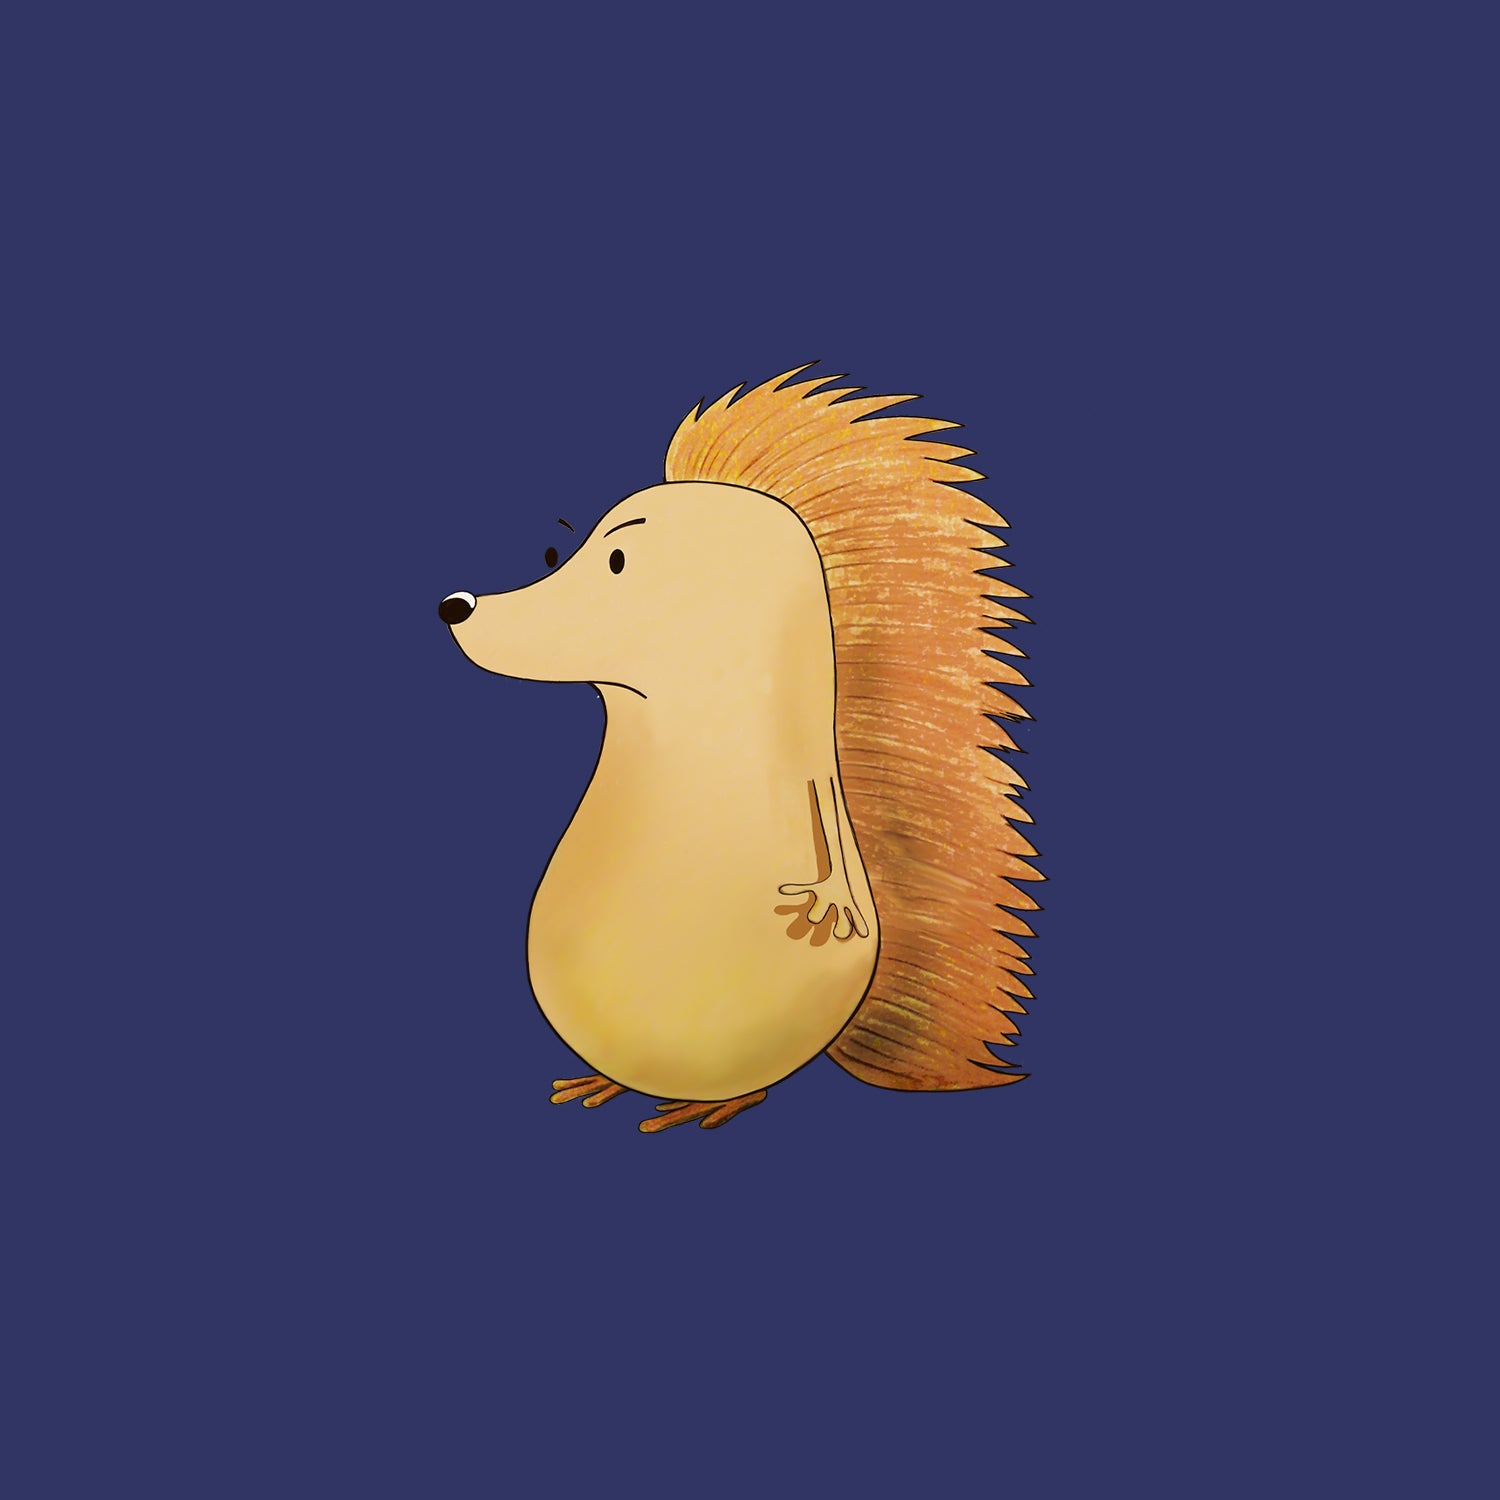 Geoffrey The Grumpy Hedgehog